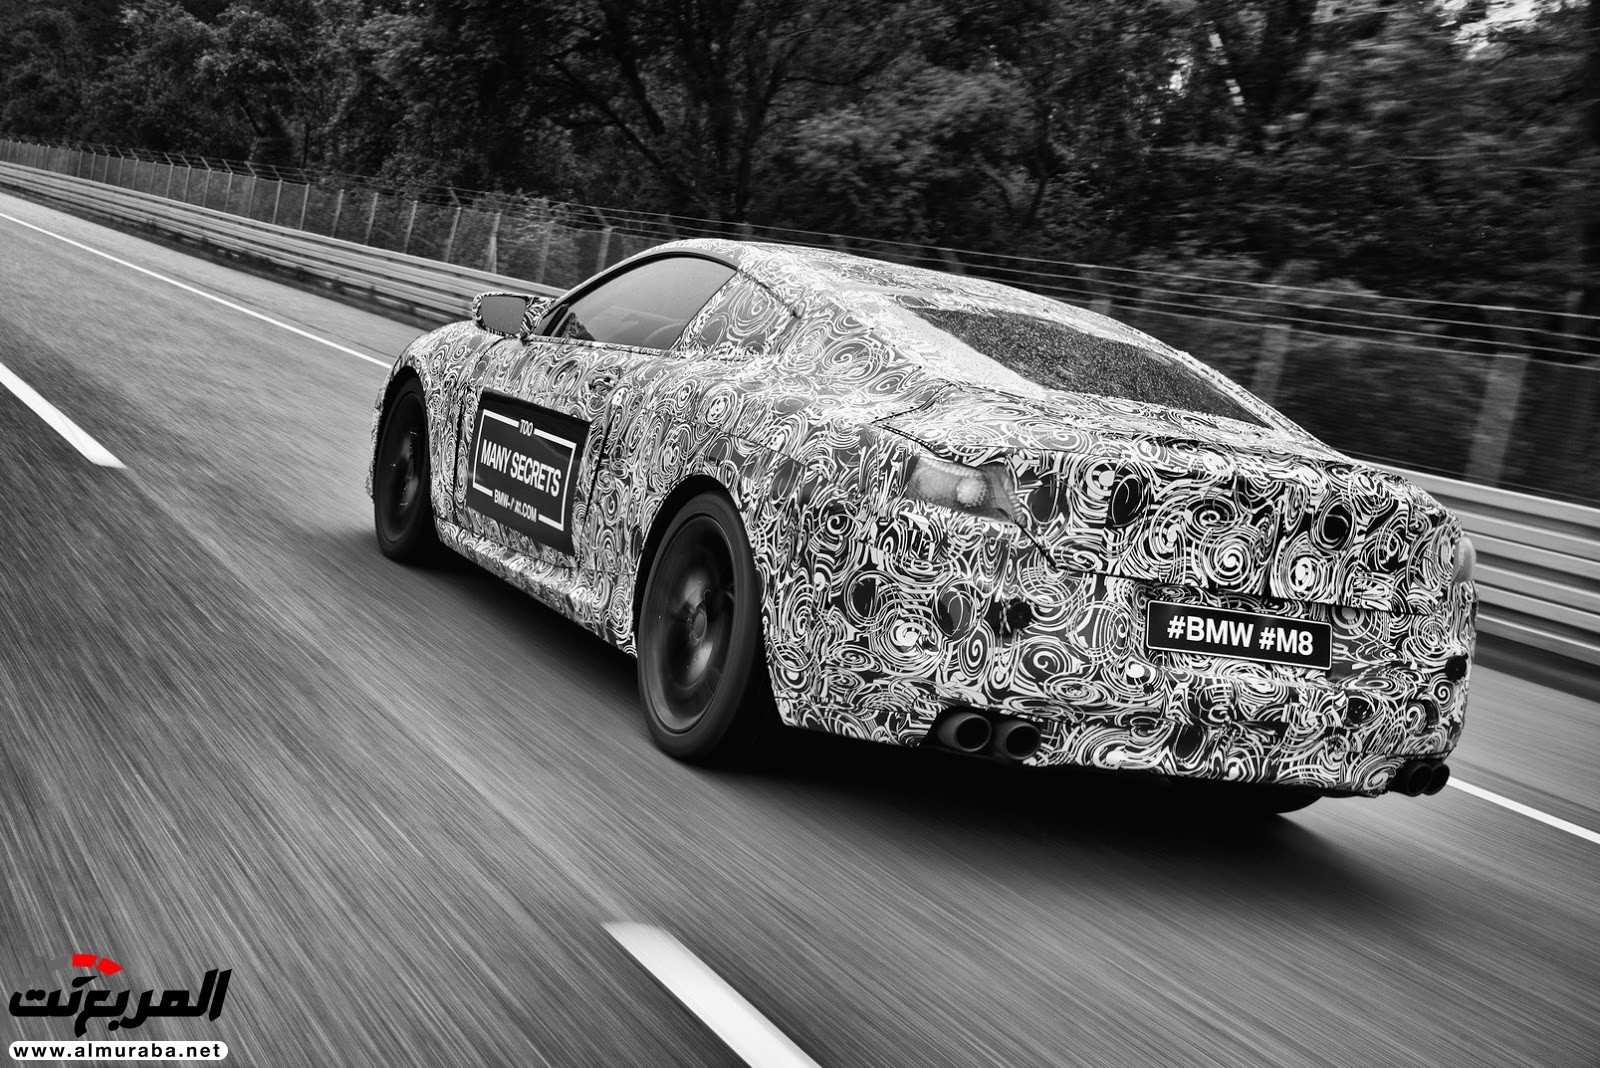 بي إم دبليو M8 يكشف عن نموذجها - وسيارة سباق الفئة الثامنة في الطريق 90